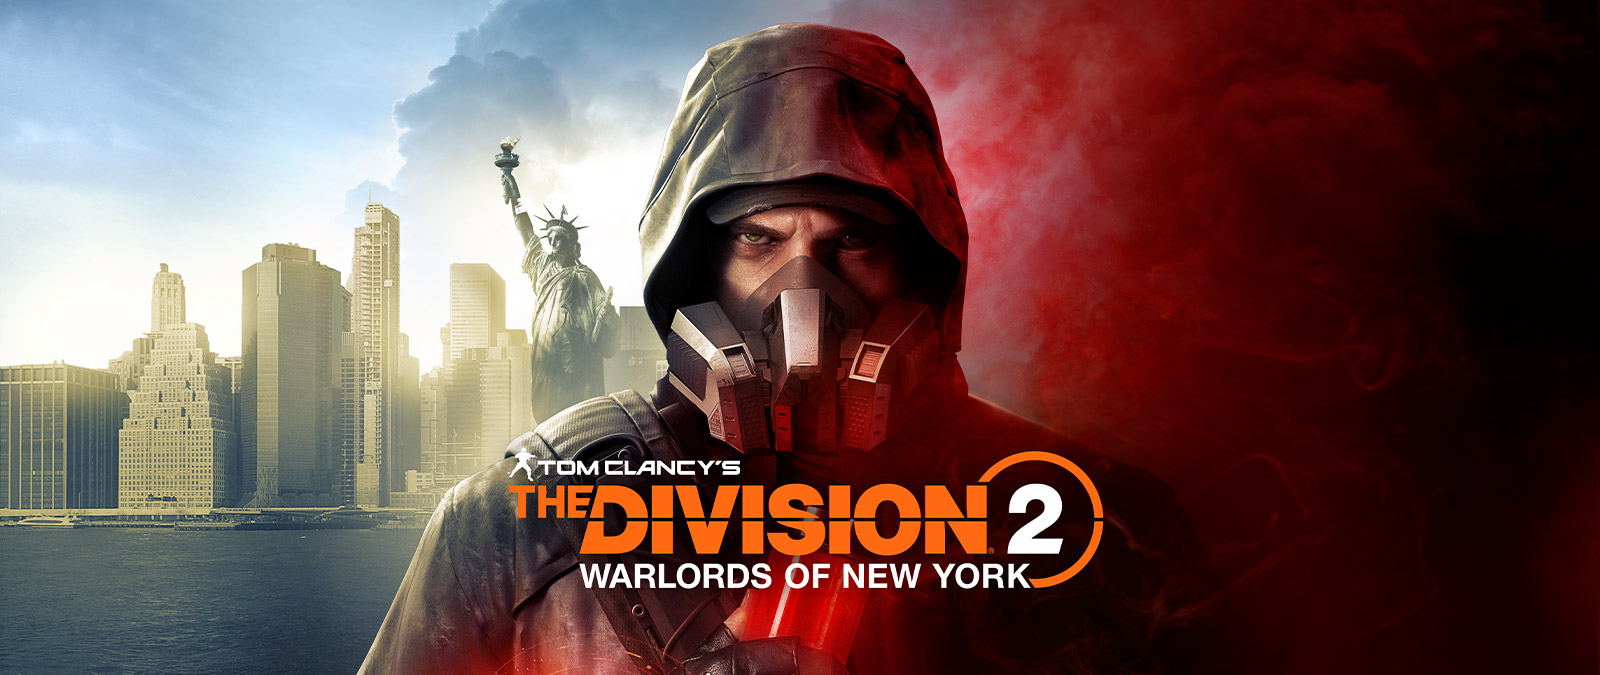 Tom Clancy’s The Division 2 Warlords of New York, Aaron Keener con una máscara antigas frente a la Estatua de la Libertad